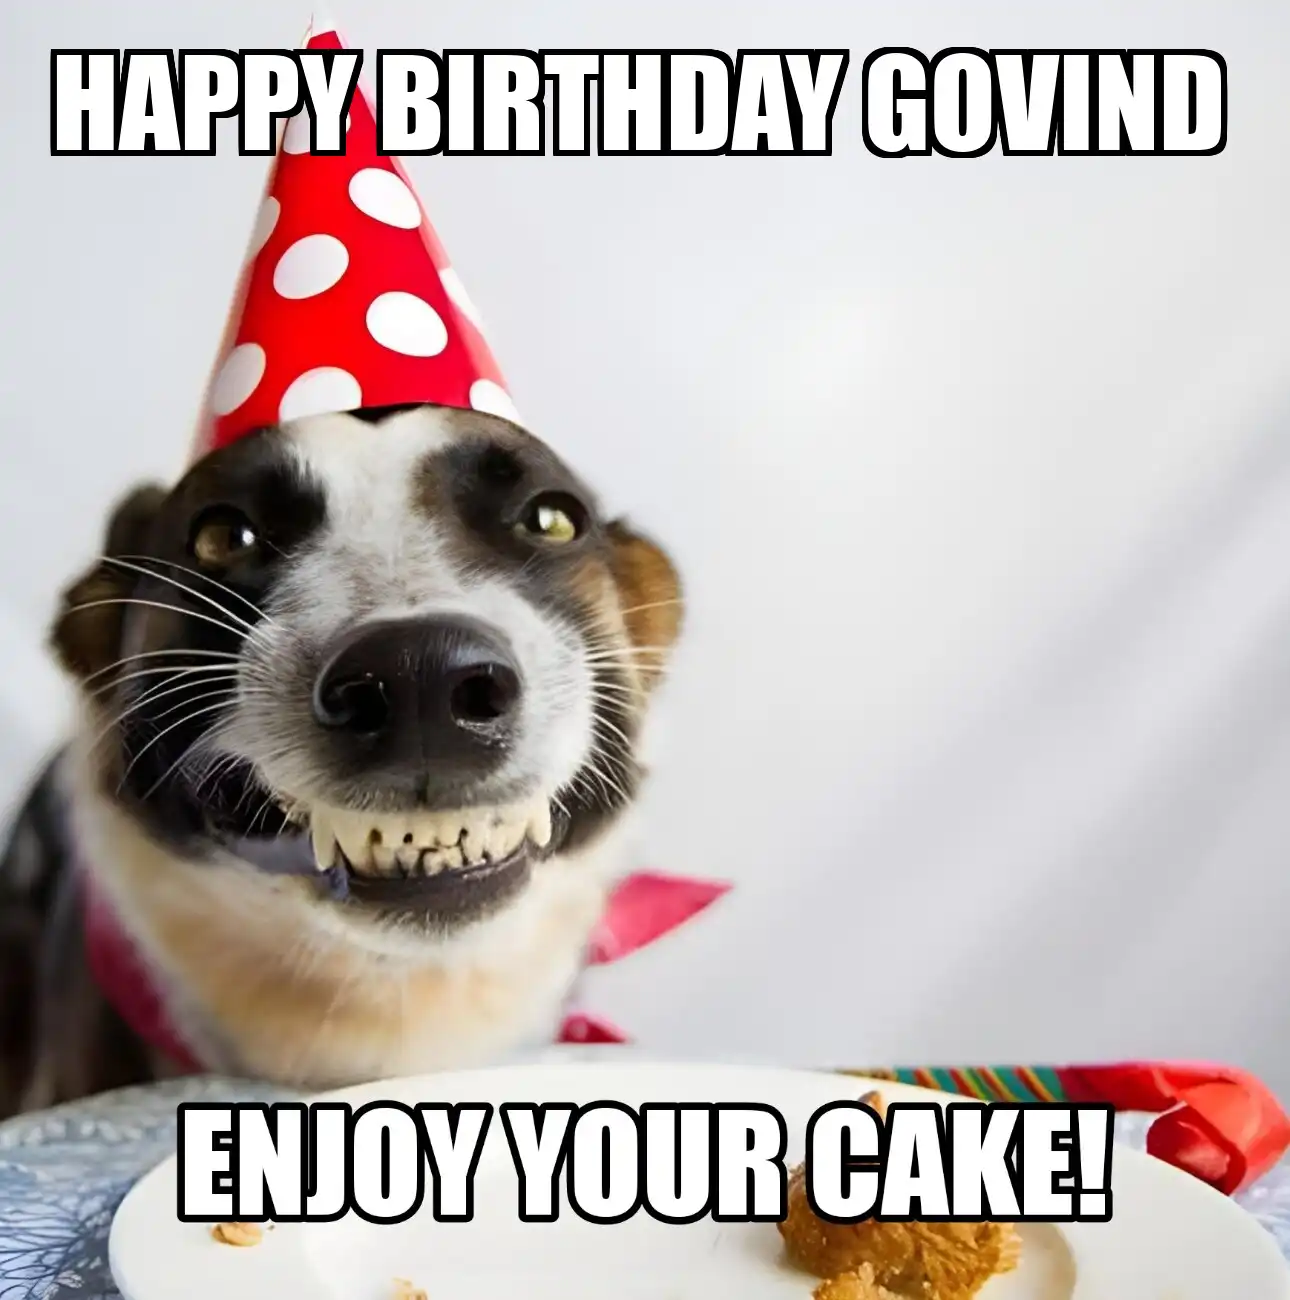 Happy Birthday Govind Enjoy Your Cake Dog Meme